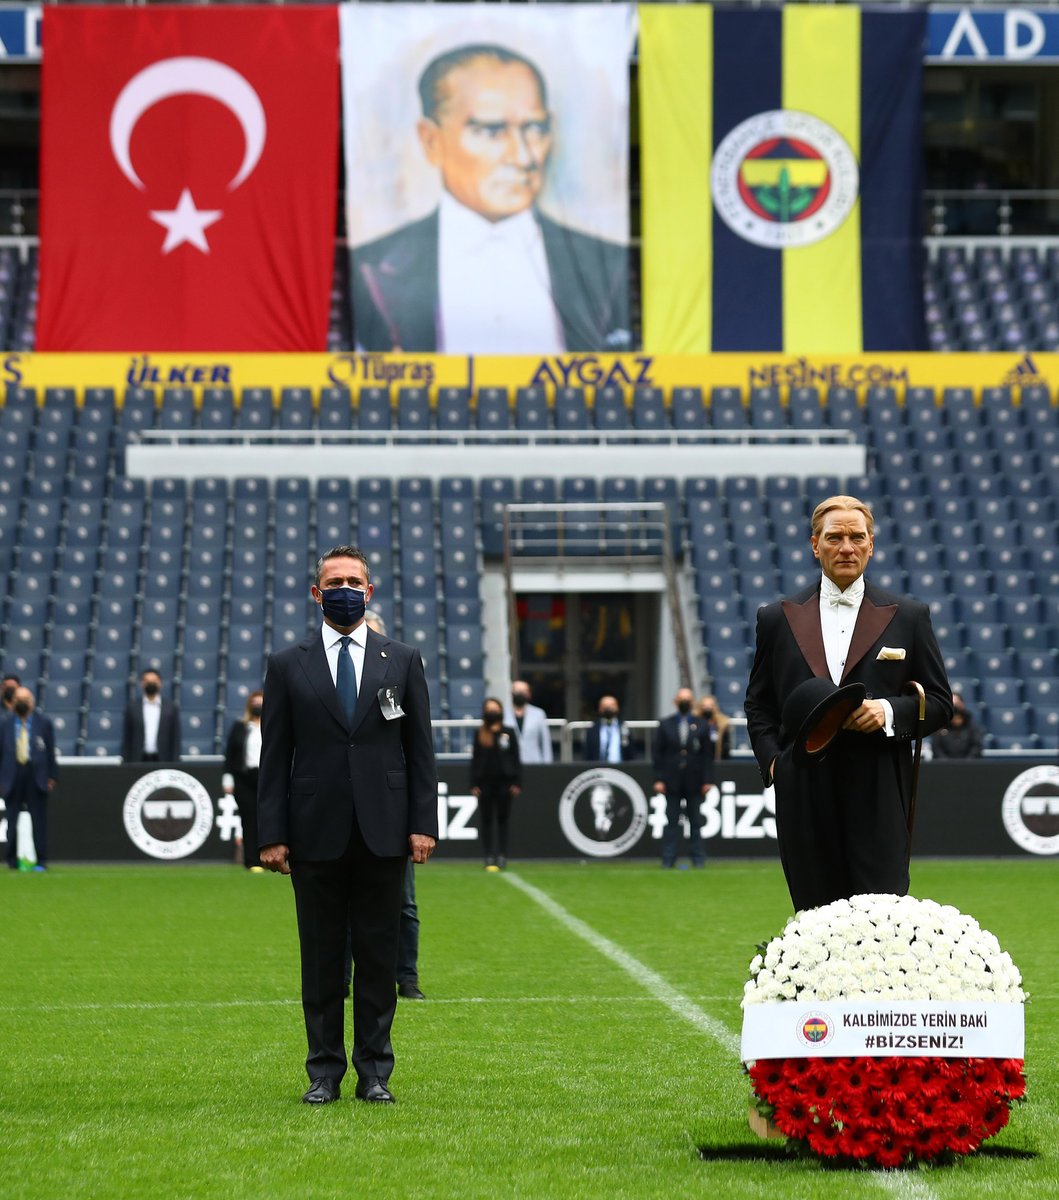 Ulu Önderimiz Mustafa Kemal Atatürk için stadımızda 10 Kasım saygı zinciri oluşturuldu. 

#BizSeniz 

🔗 bit.ly/2UdPlEk